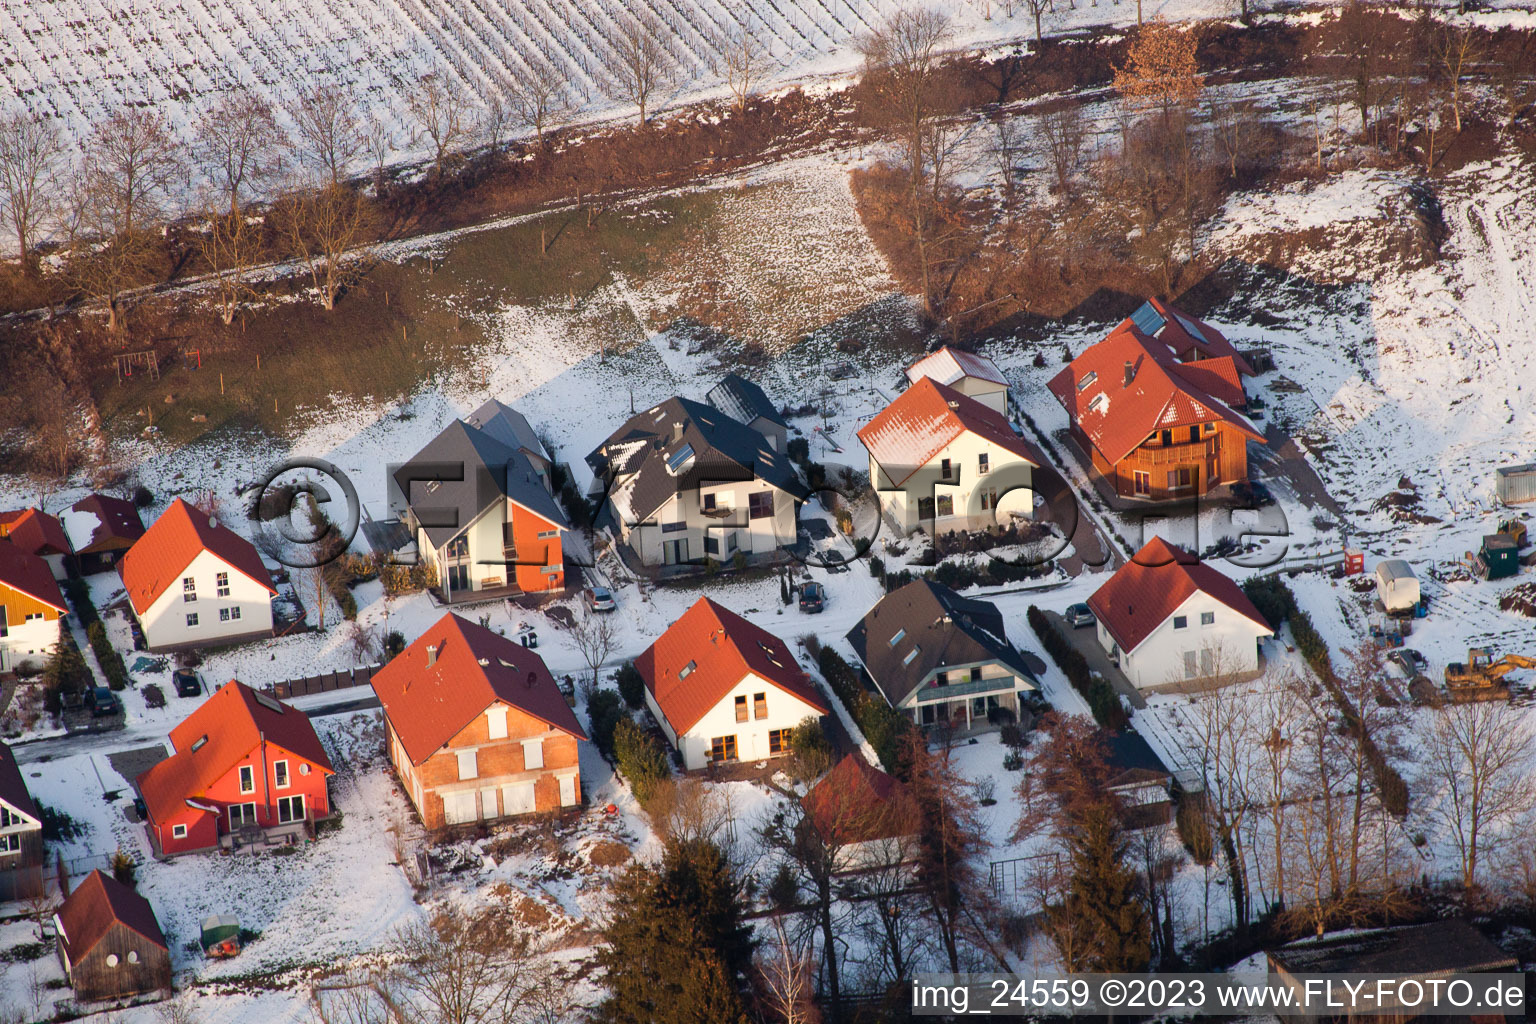 Dierbach dans le département Rhénanie-Palatinat, Allemagne d'un drone